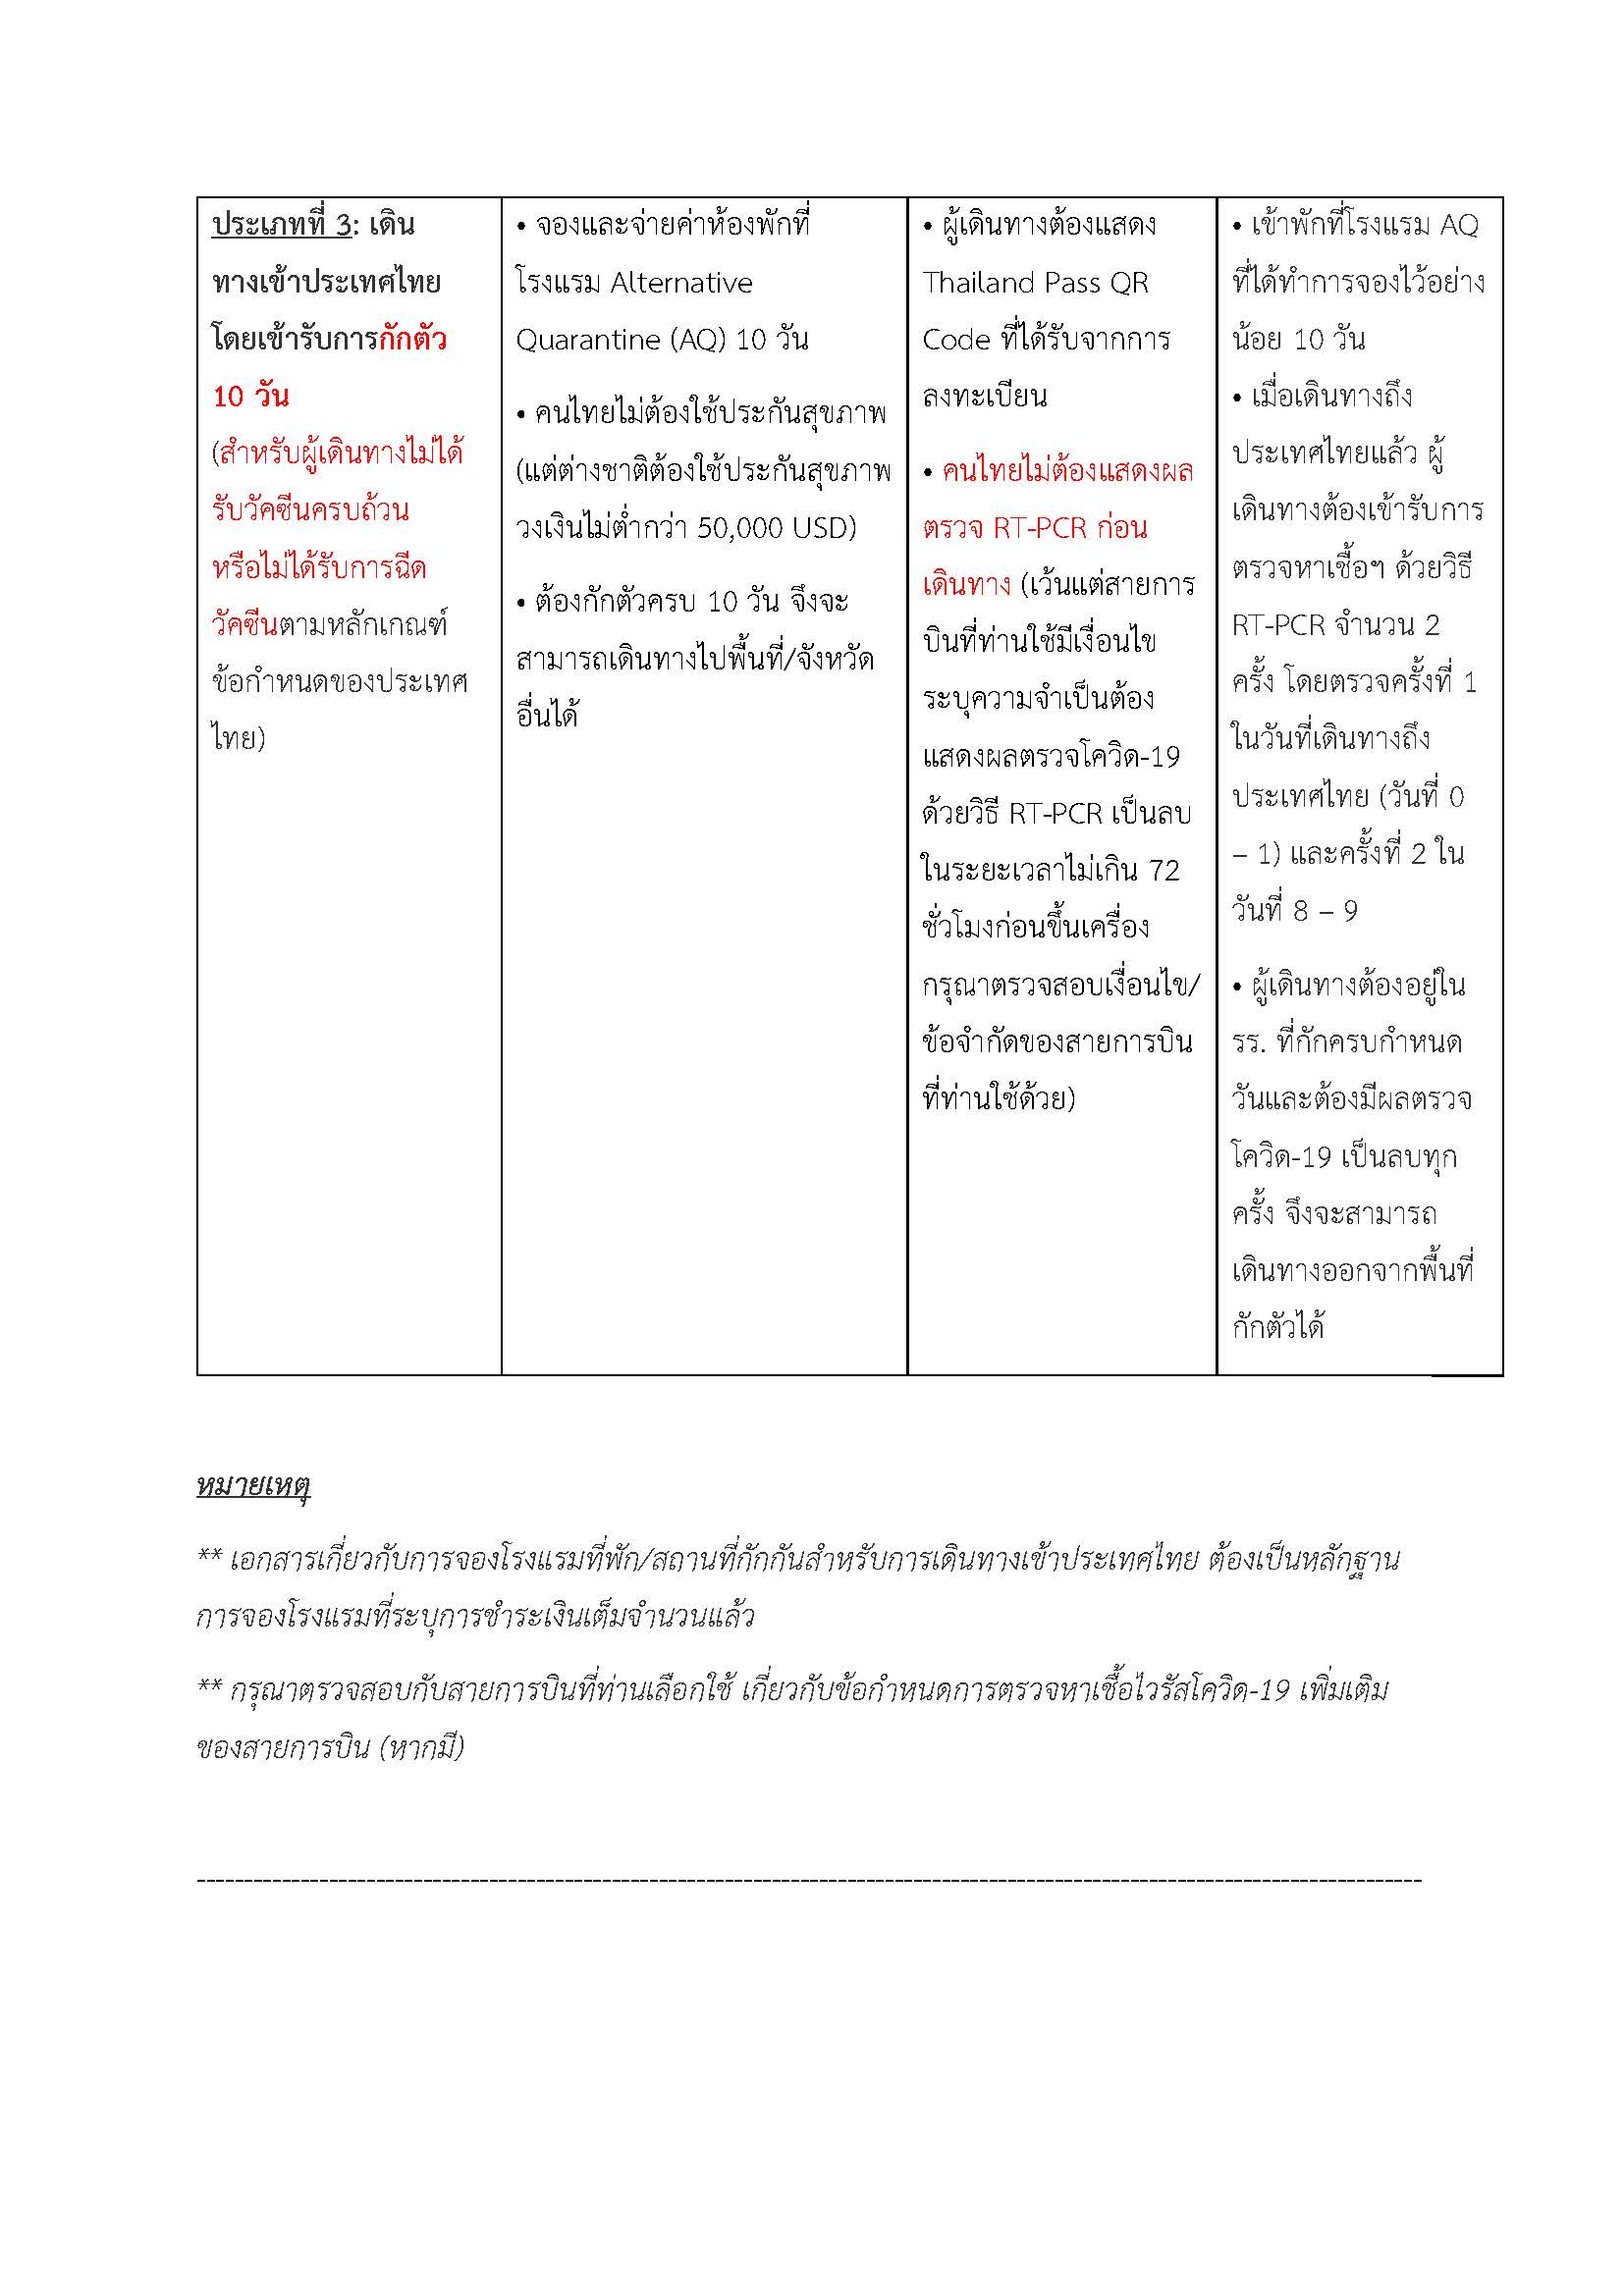 ประกาศขั้นตอนการเดินทางเข้าประเทศไทย_rev2_220112_Page_6